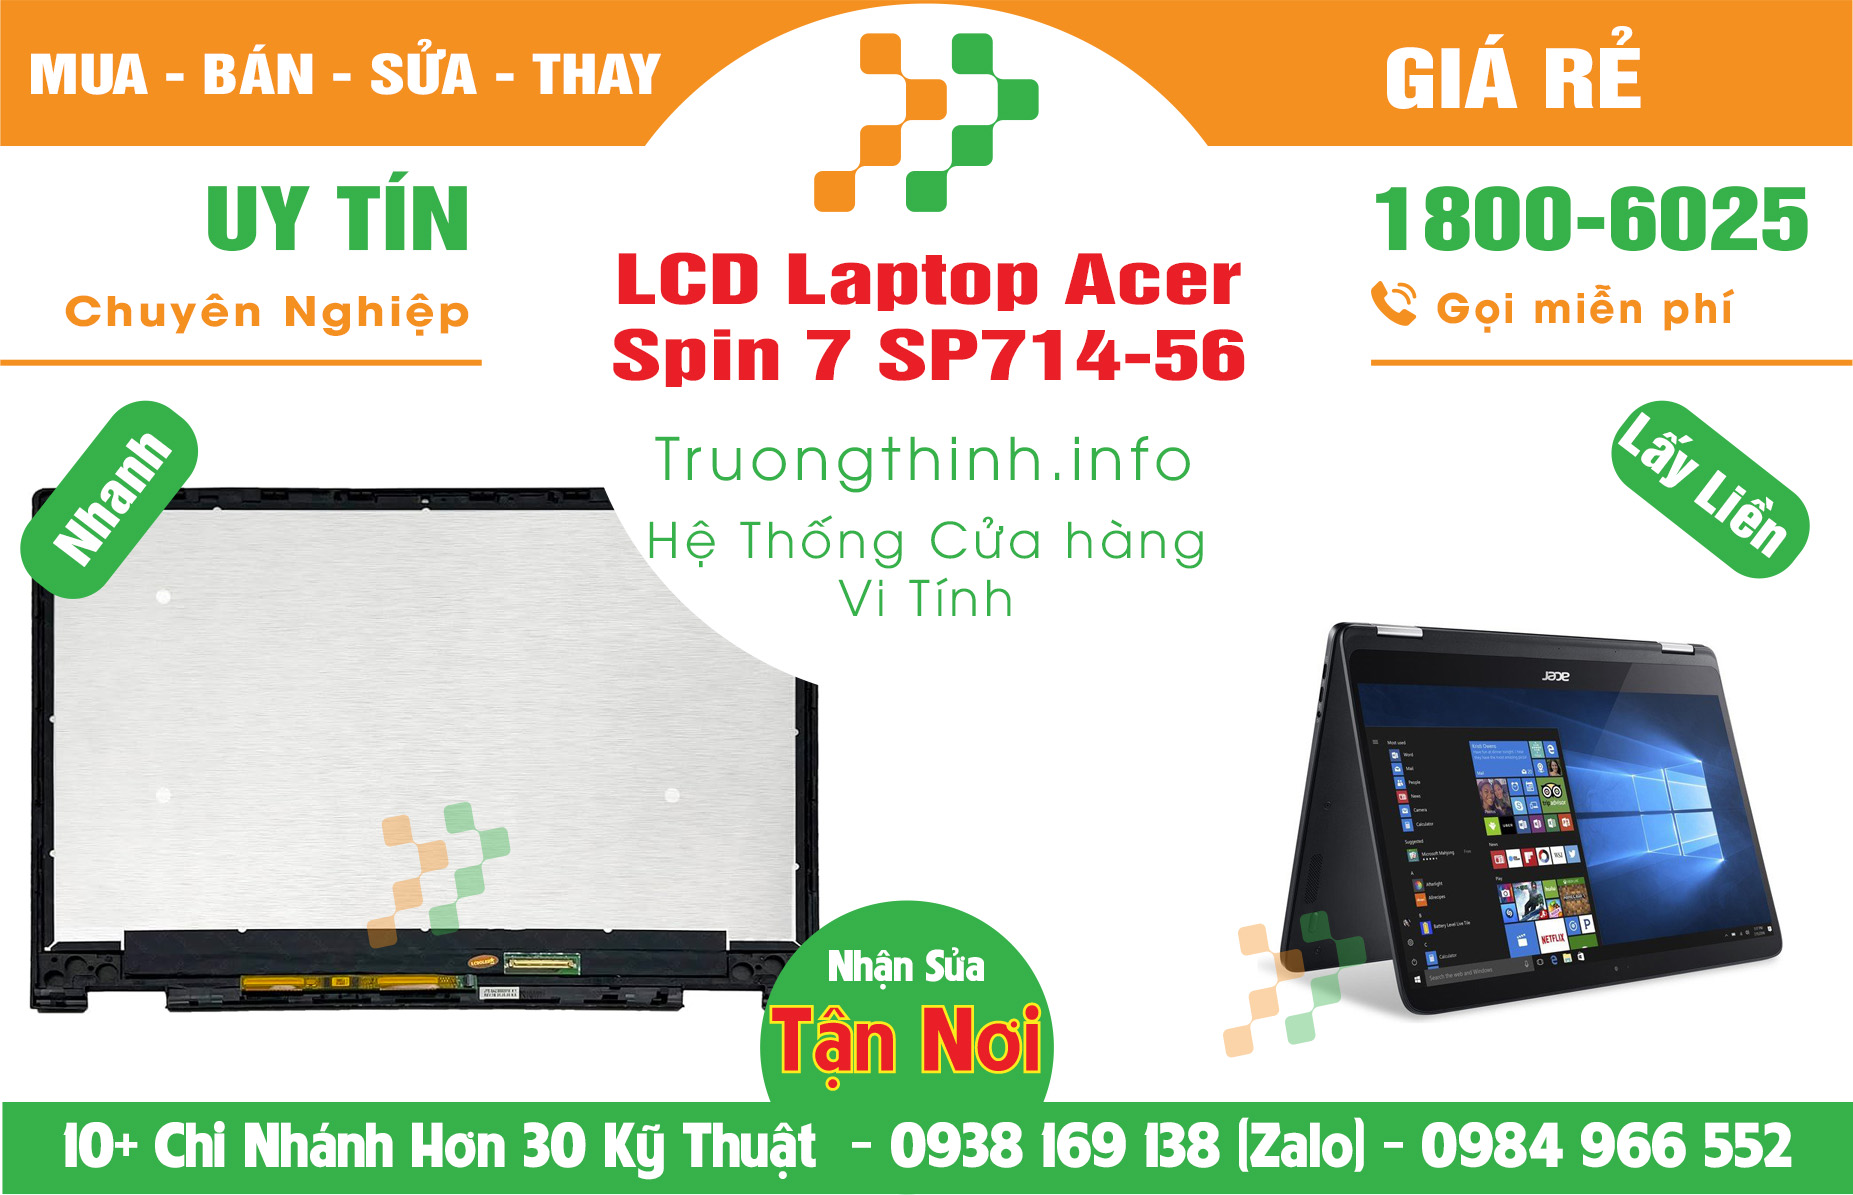 Mua Bán Màn Hình Laptop Acer Spin 7 SP714-56 Giá Rẻ | Máy Tính Trường Thịnh Giá Rẻ